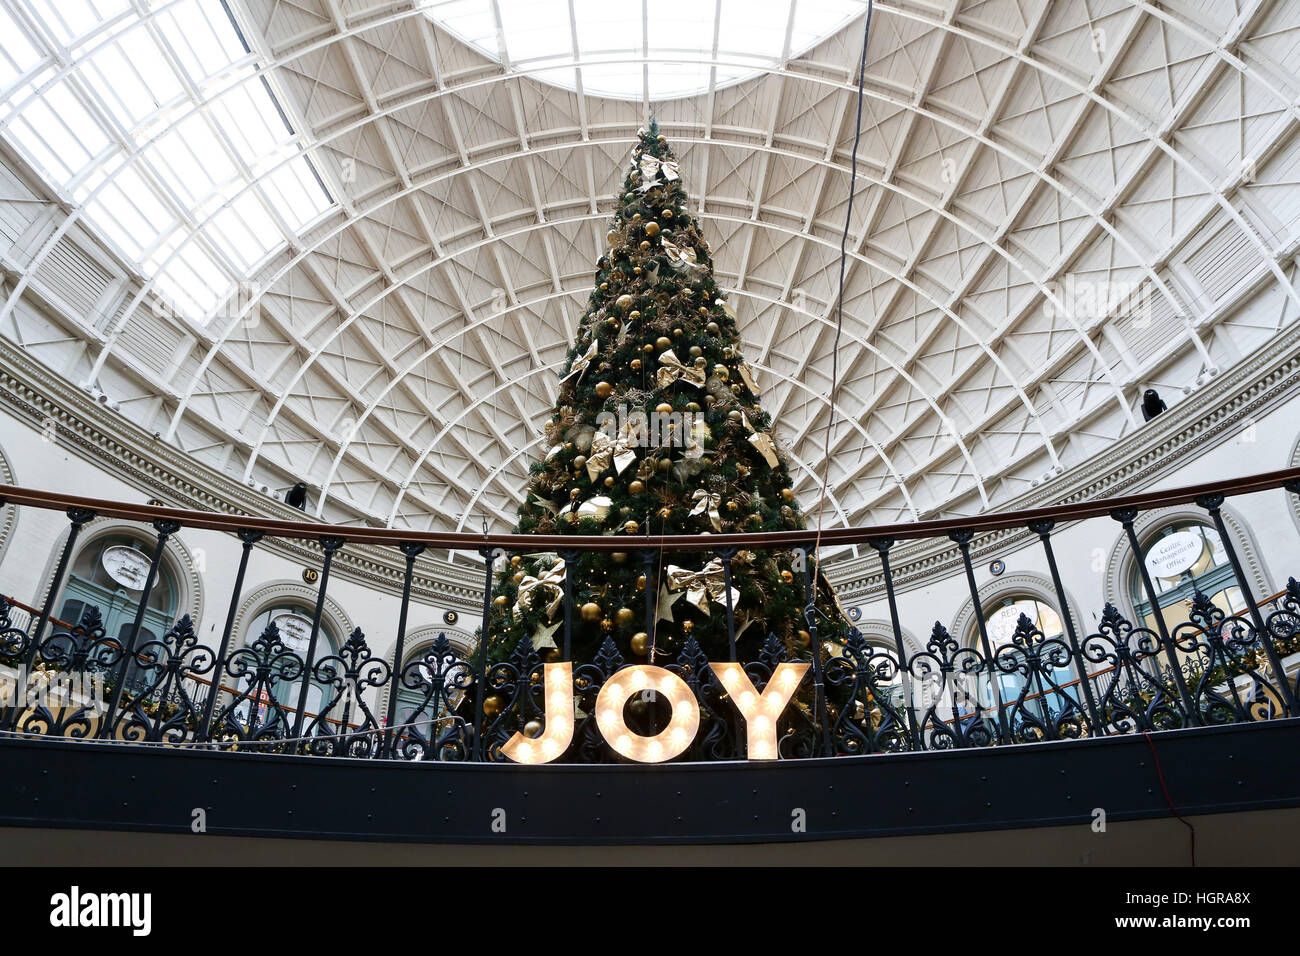 02/12/16, Leeds, Royaume-Uni. un arbre de Noël et décorations festives ornent la corn exchange à Leeds, West Yorkshire. que décembre arrive dans uk les consommateurs sont Banque D'Images